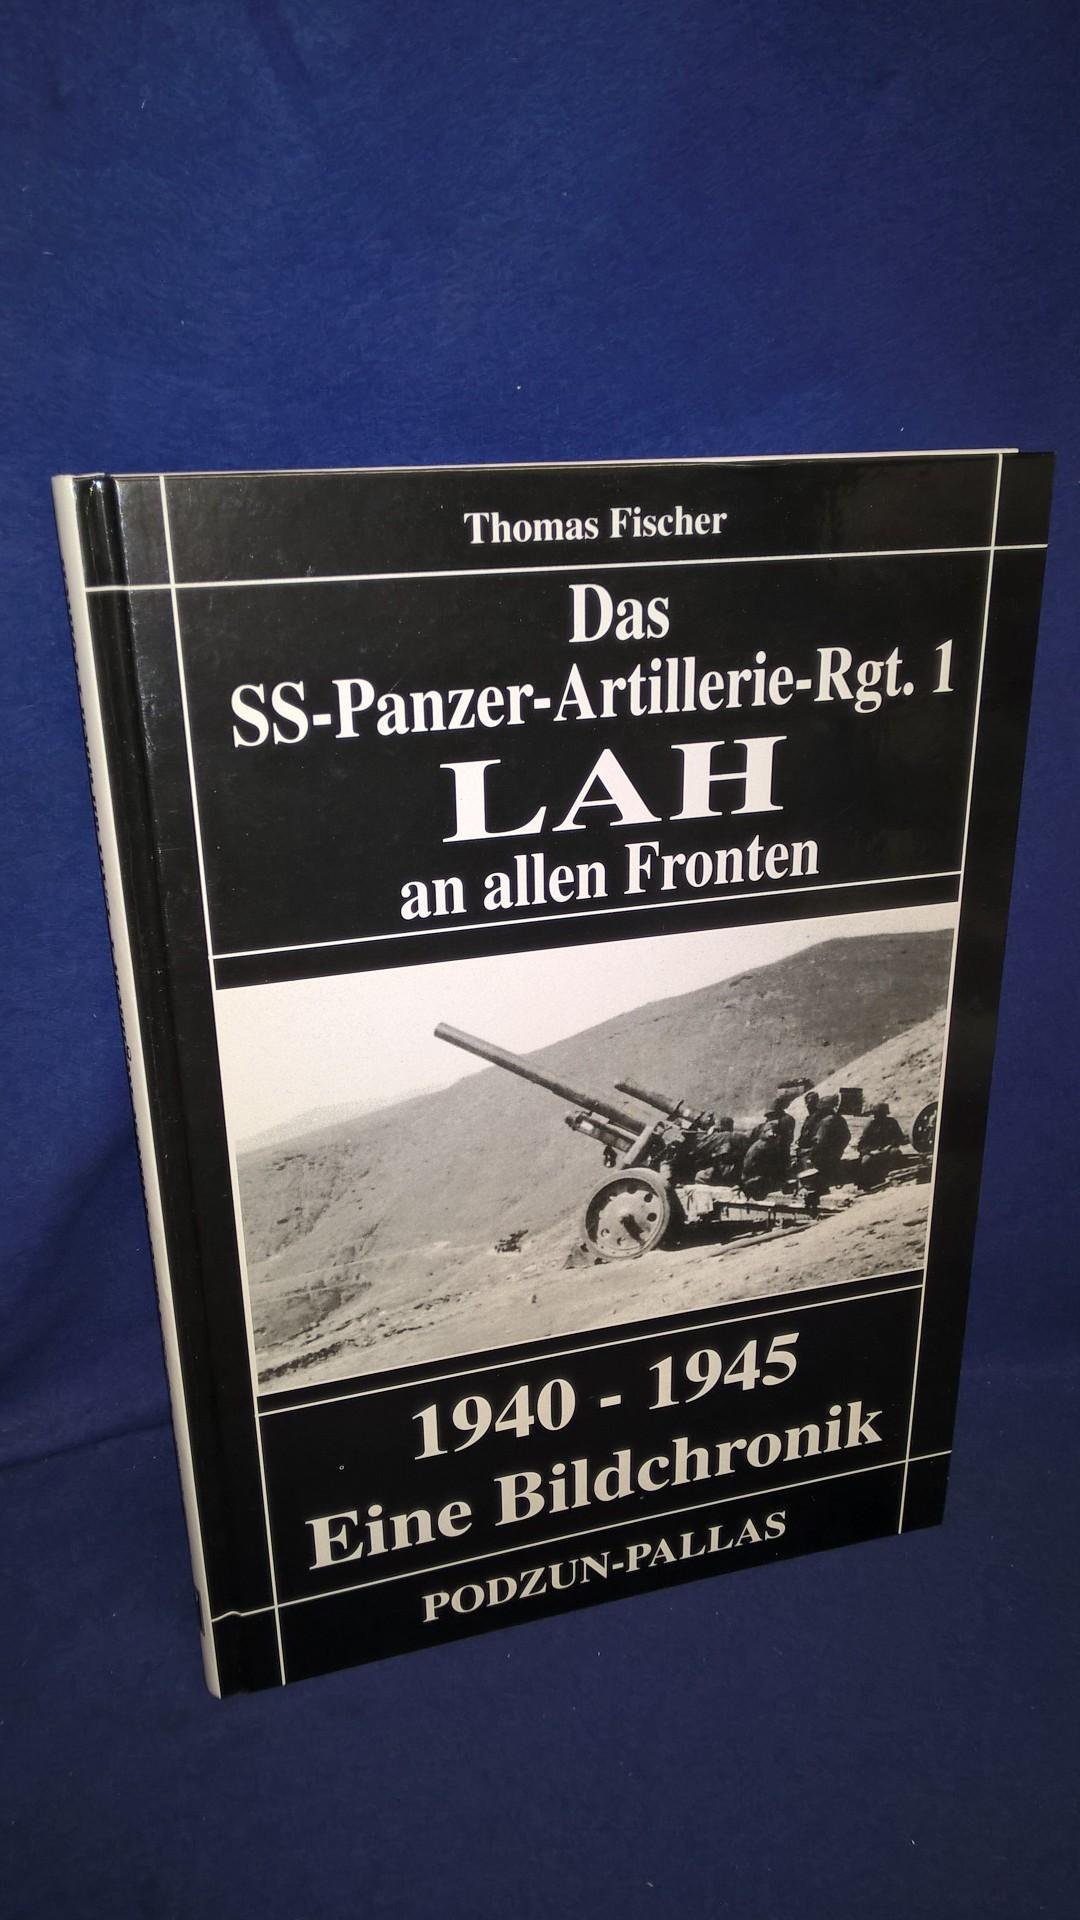 Das SS-Panzer-Artillerie-Regiment 1. LAH an allen Fronten. 1940 - 1945. Eine Bilderchronik.